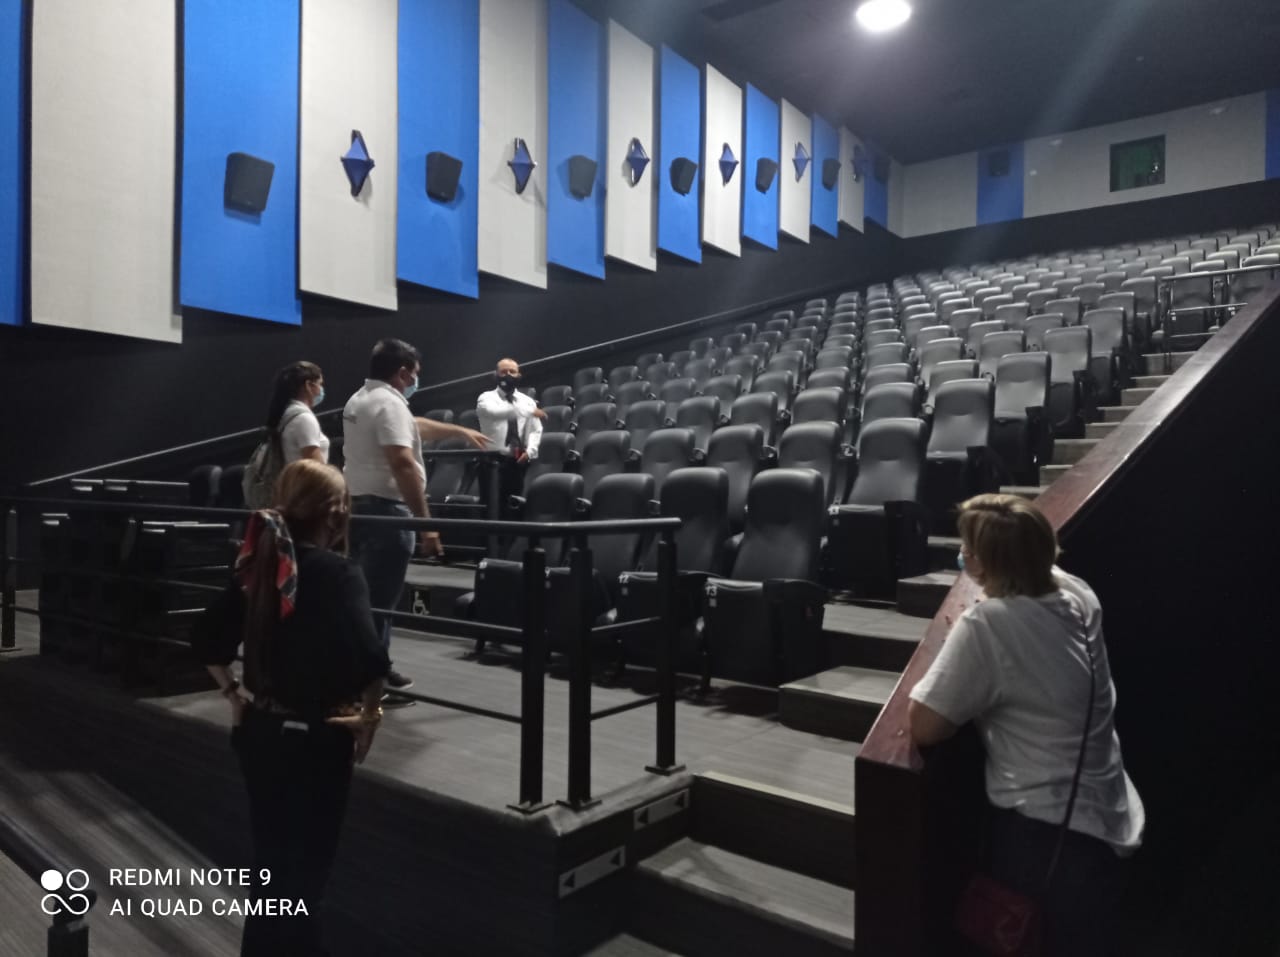  GEVI visitó las salas de cine de Royal Films que abrió nuevamente sus puertas